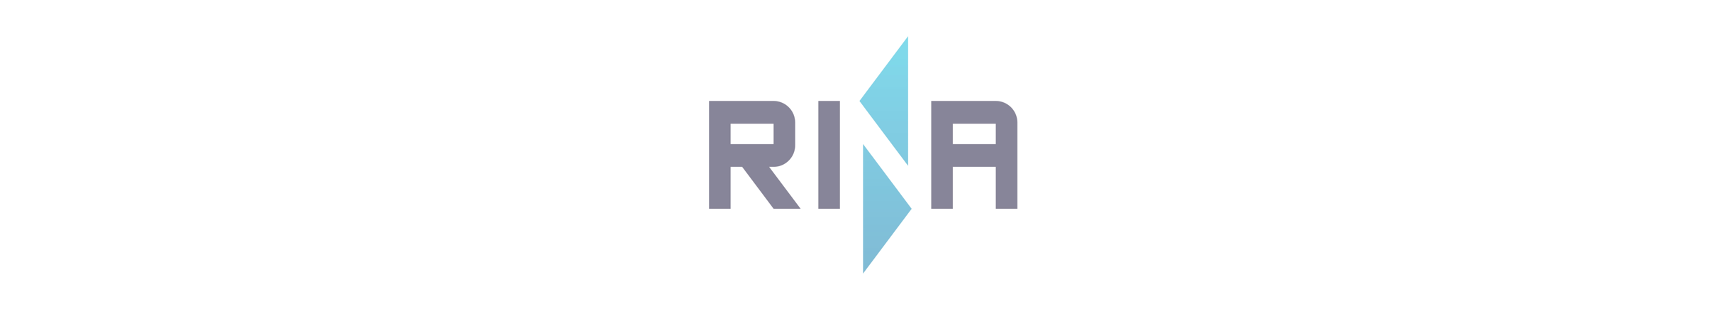 RINA reports 21% revenue increase for 2022